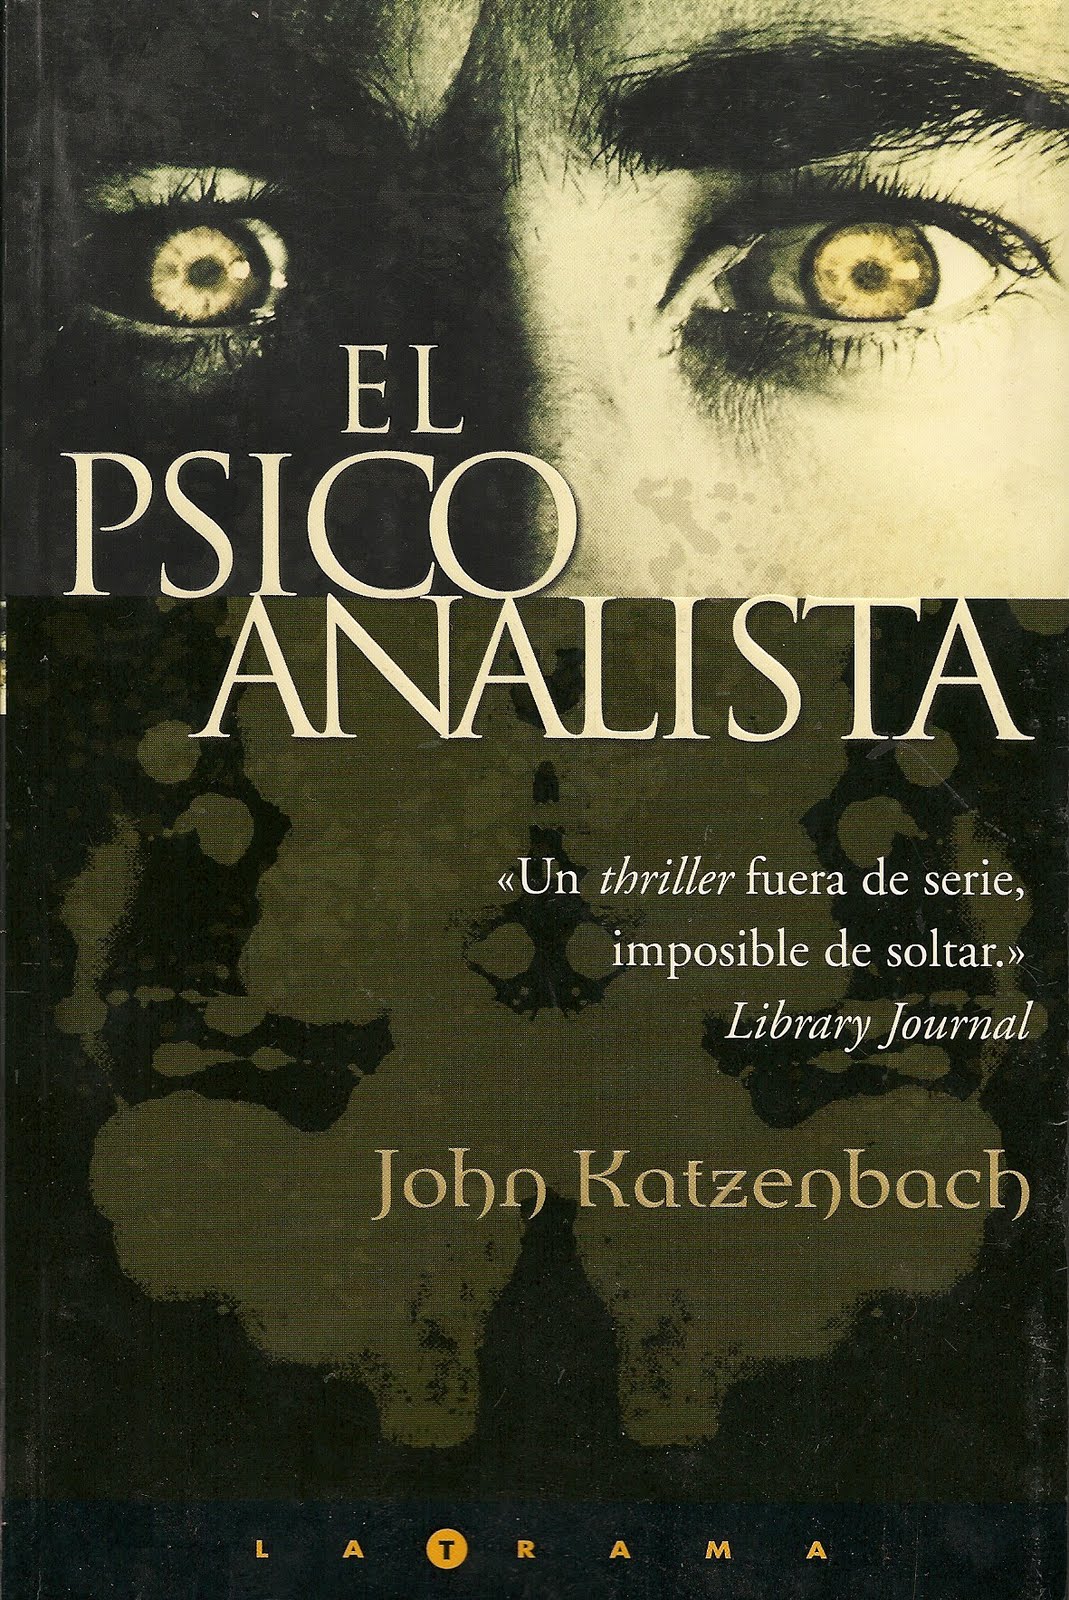 Abrazando Libros: Reseña: El Psicoanalista - John Katzenbach